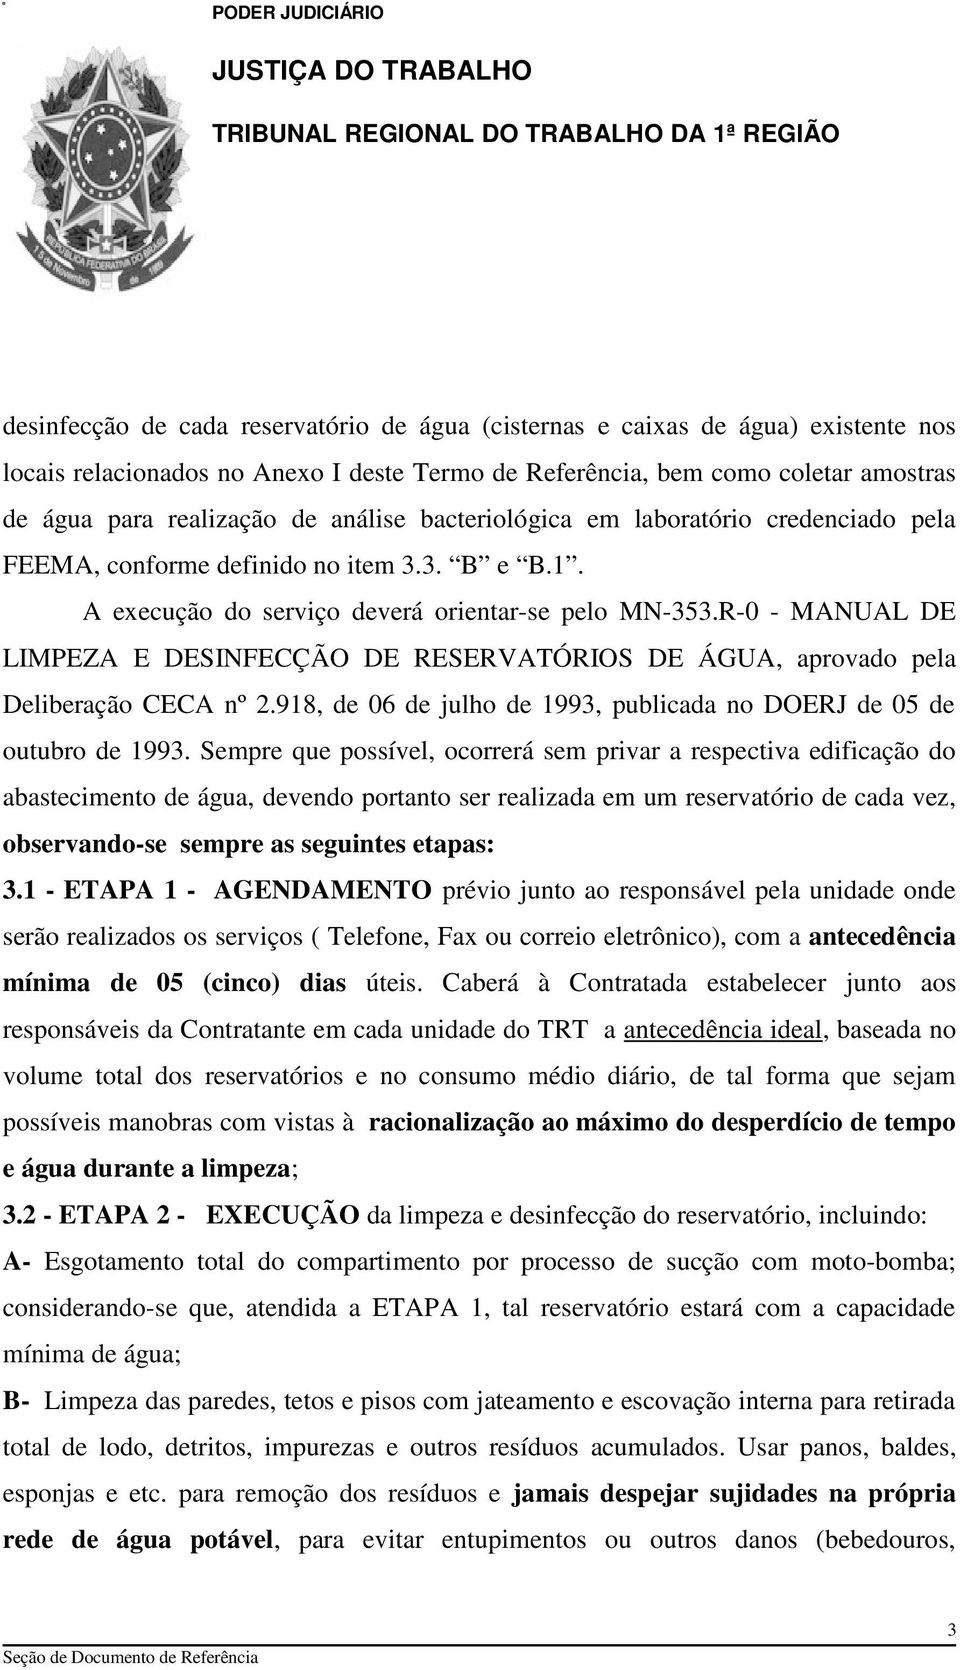 R-0 - MANUAL DE LIMPEZA E DESINFECÇÃO DE RESERVATÓRIOS DE ÁGUA, aprovado pela Deliberação CECA nº 2.918, de 06 de julho de 1993, publicada no DOERJ de 05 de outubro de 1993.